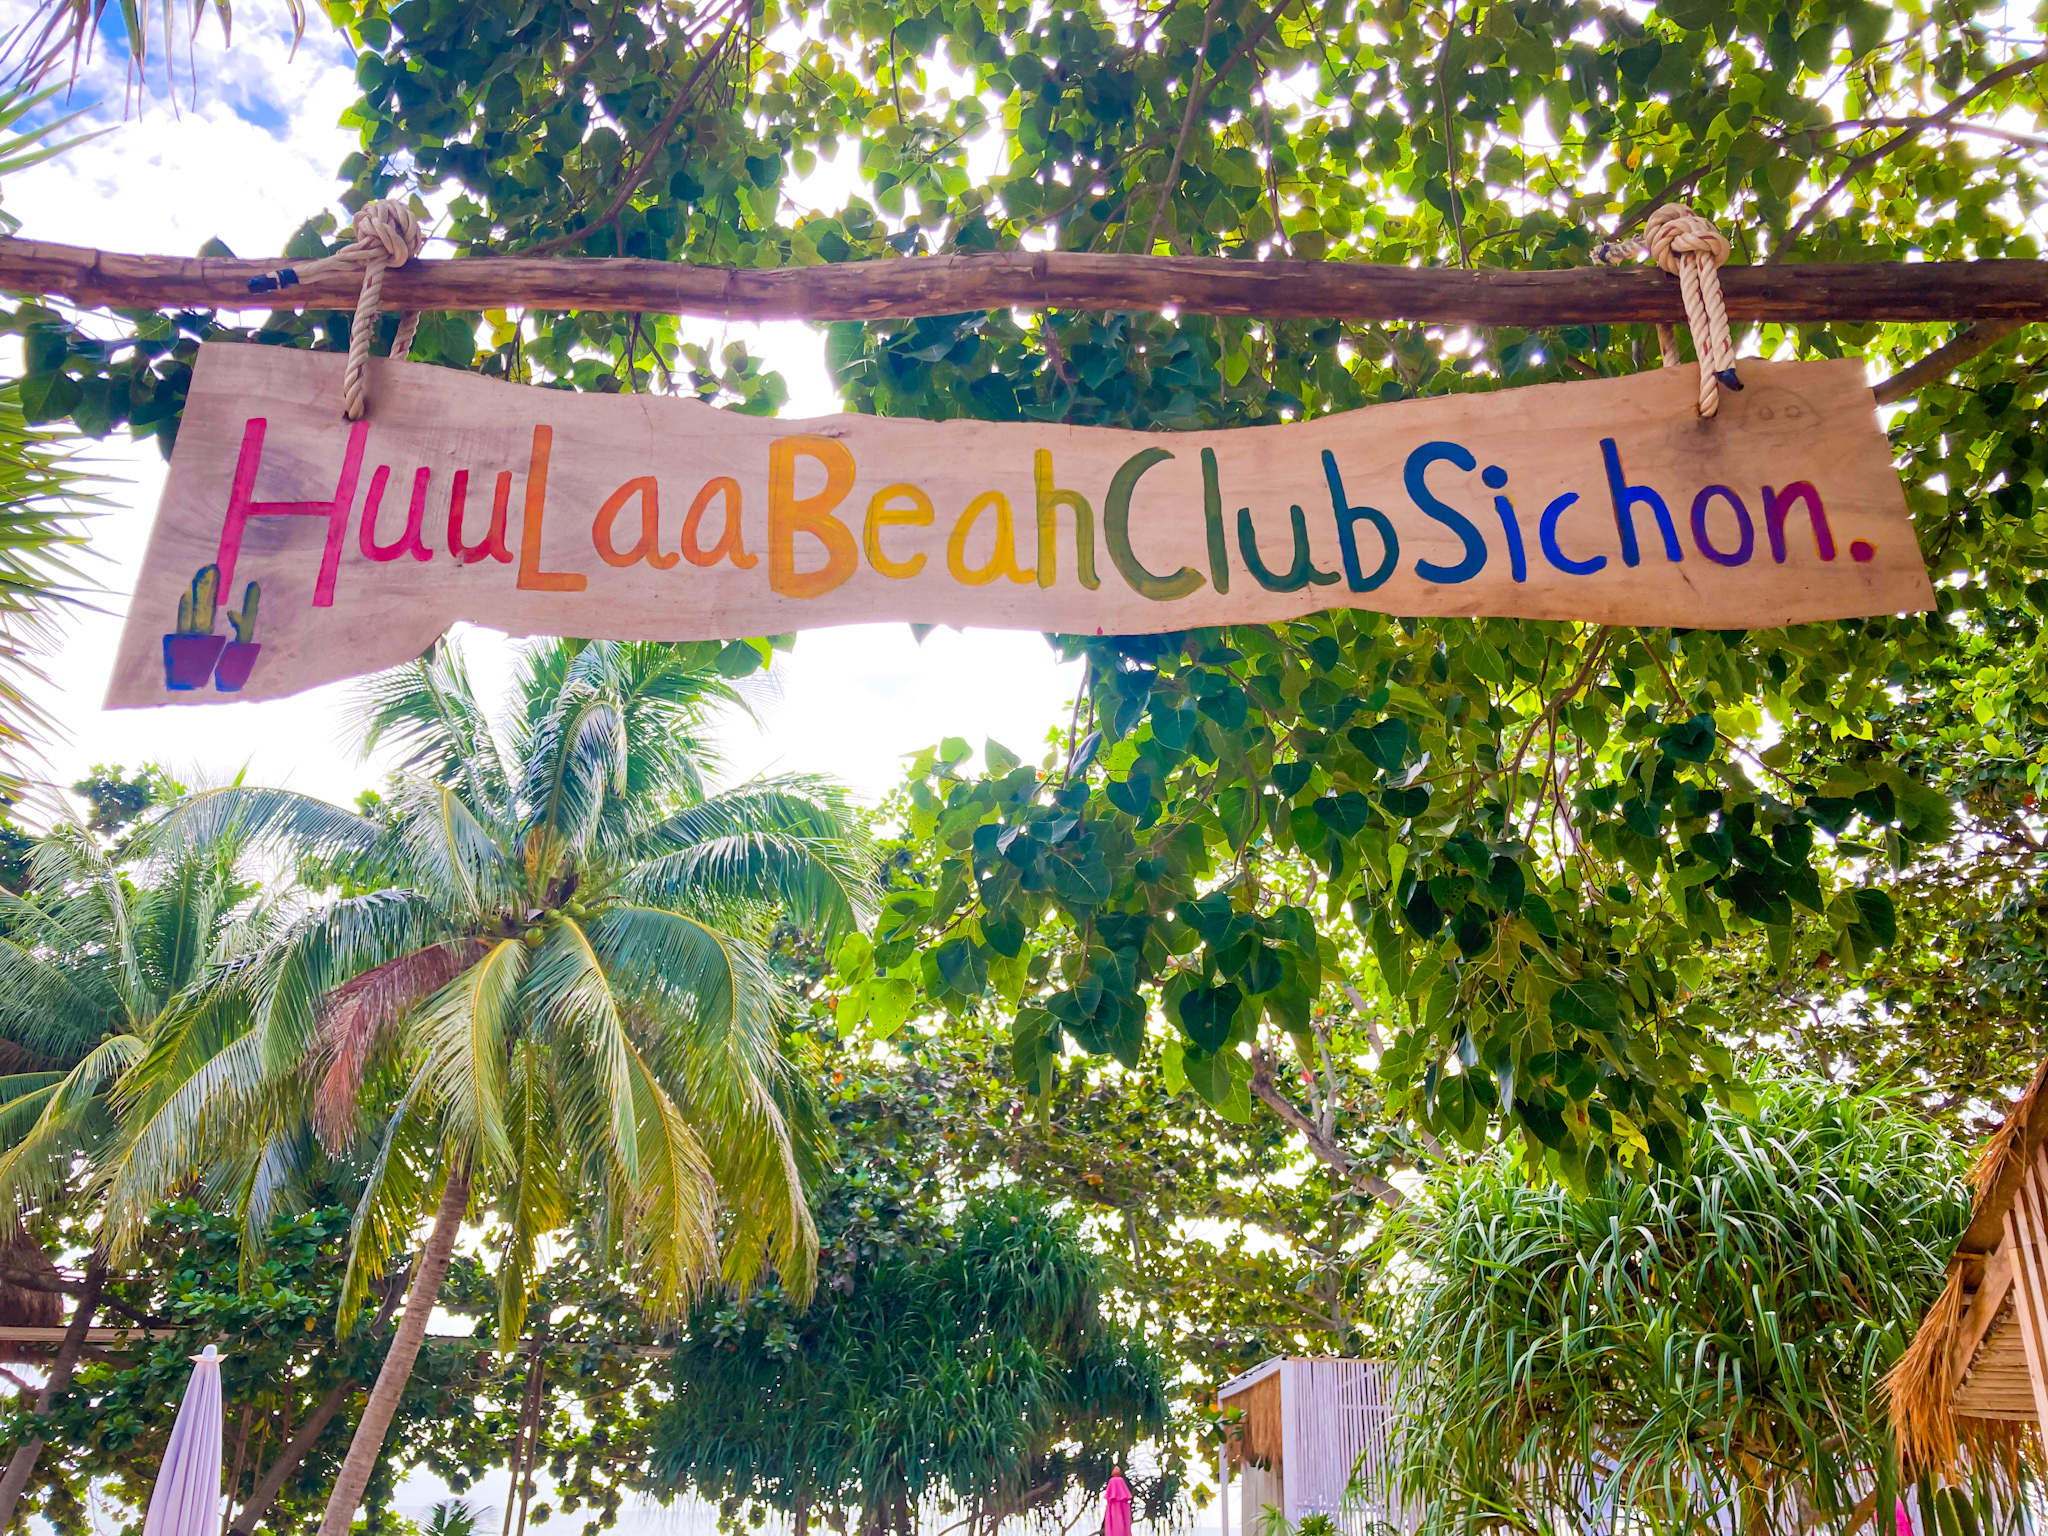 รูปภาพของ HuuLaa Beachclub Sichon ฮูล่า บีชคลับ สิชล